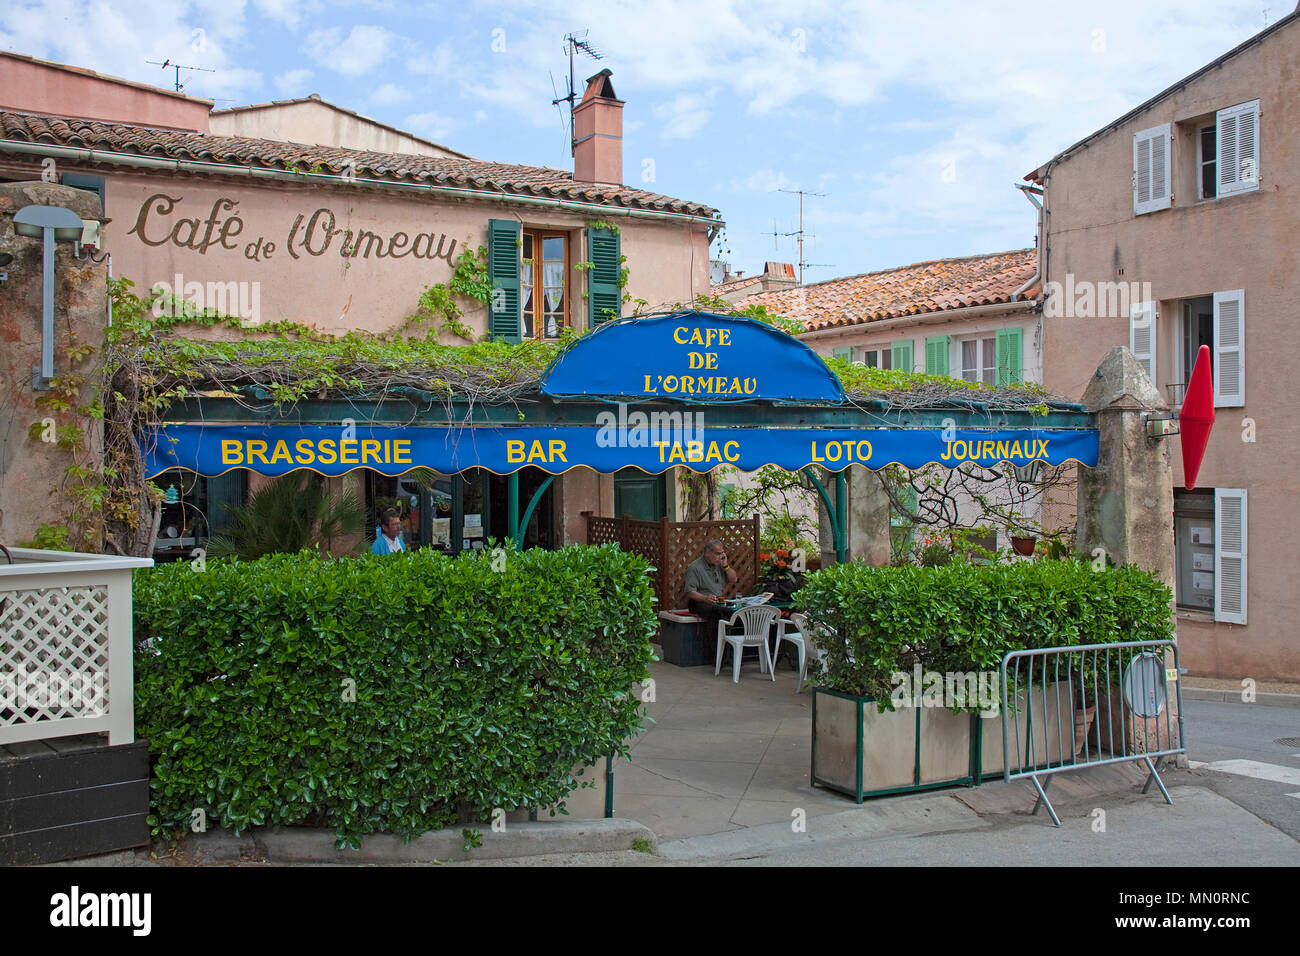 Cafe, Brasserie en la aldea de Ramatuelle, Cote d'Azur, Département Var, Provence-Alpes-Côte d'Azur, en el sur de Francia, Francia, Europa Foto de stock